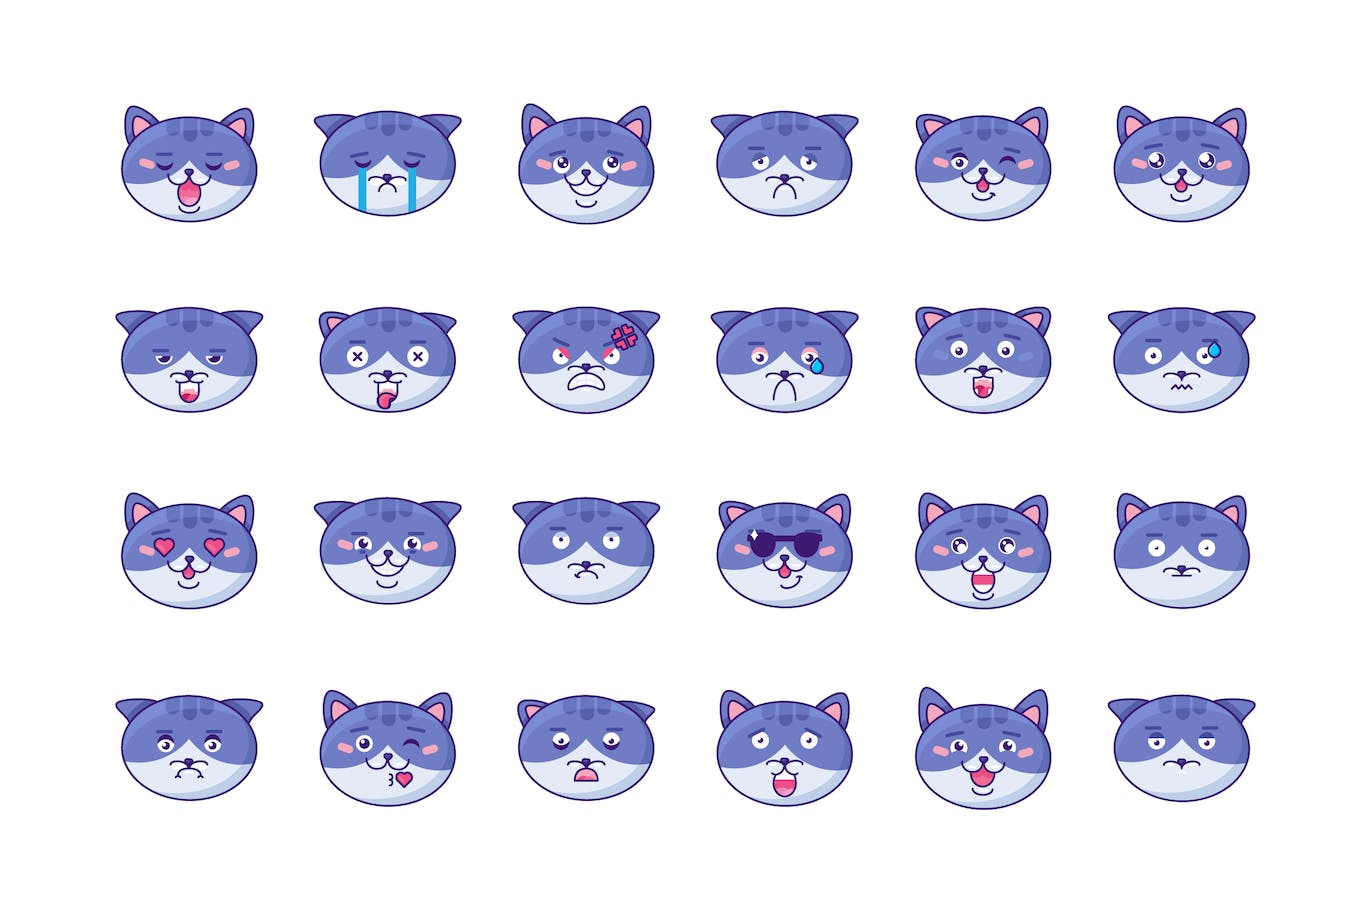 卡通猫表情设计源文件下载 (AI,EPS,JPG,PNG,SVG)